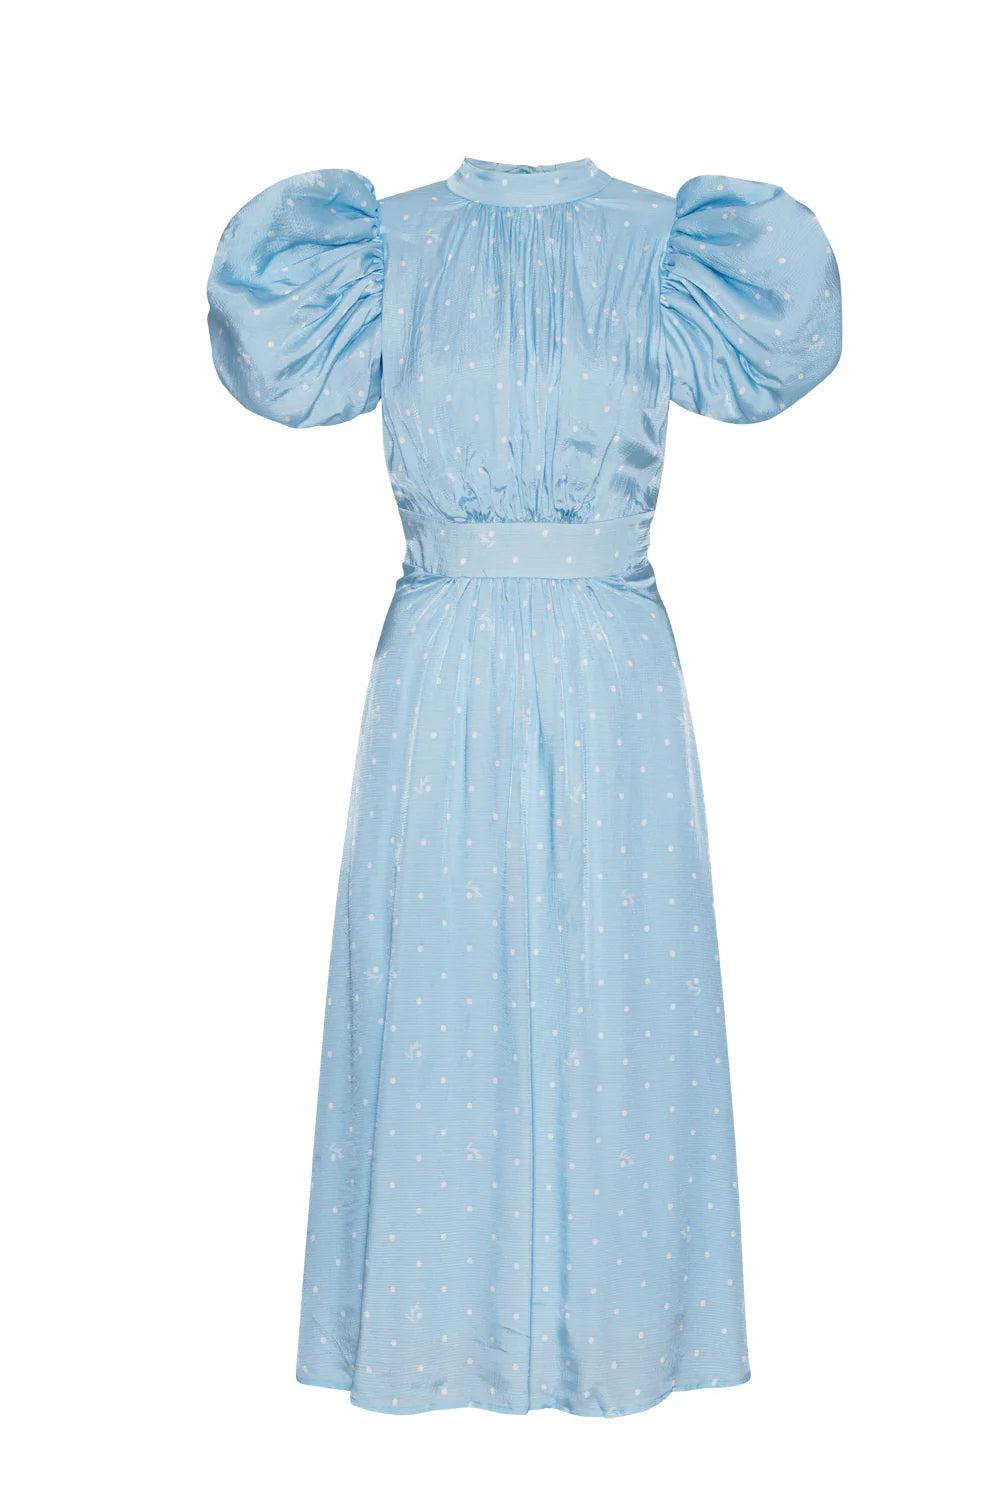 Textured Midi Puffy Dress Polka Dott Cool Blue